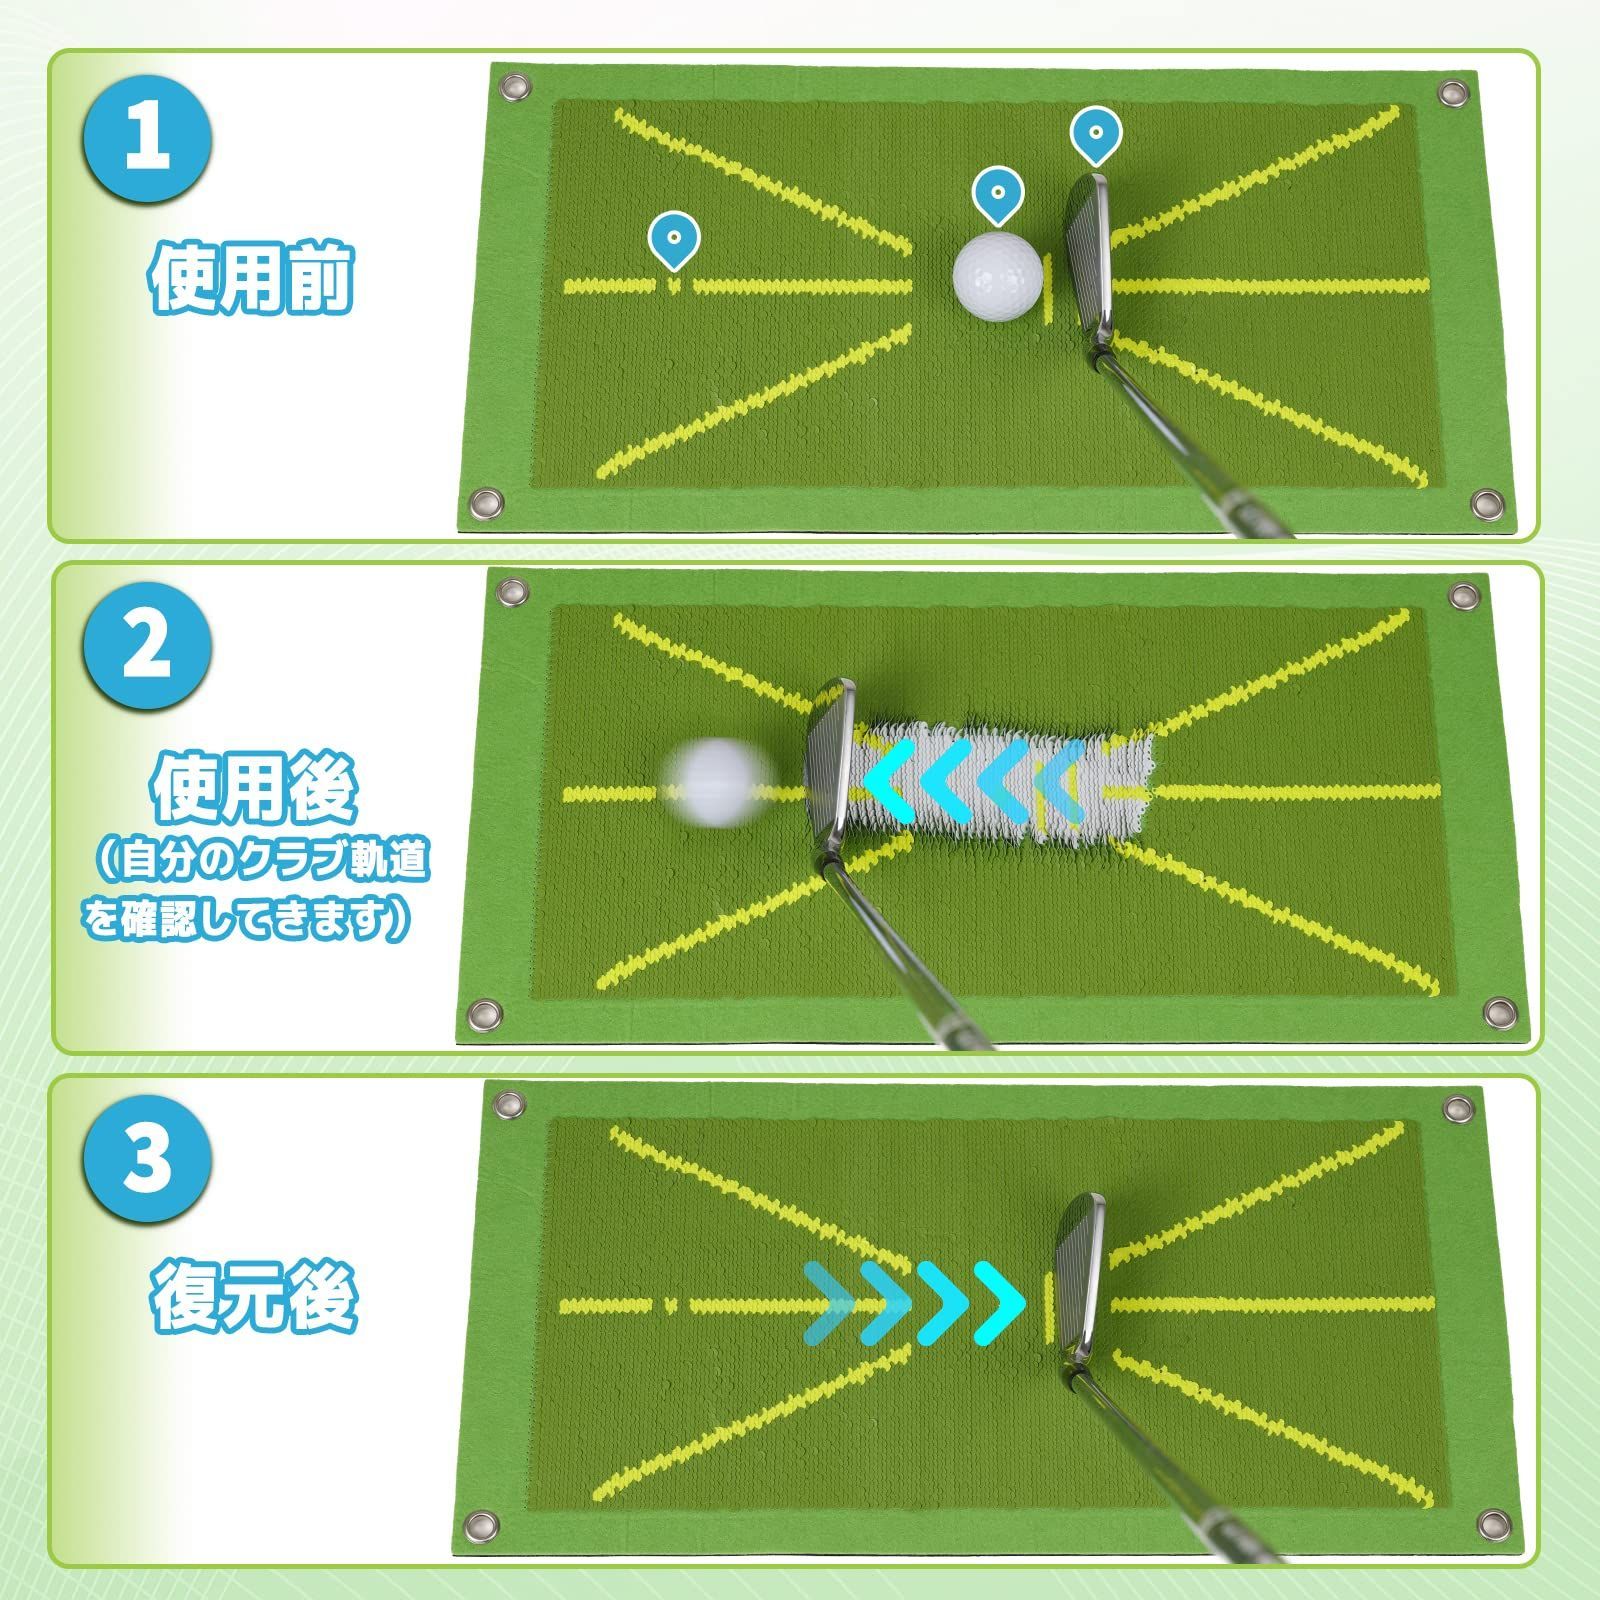 数量限定】ゴルフマット 軌跡が確認できる ショット用マット Teeth ゴルフ練習 練習器具 スイング改造 Big 素振り練習 持ち運び便利 